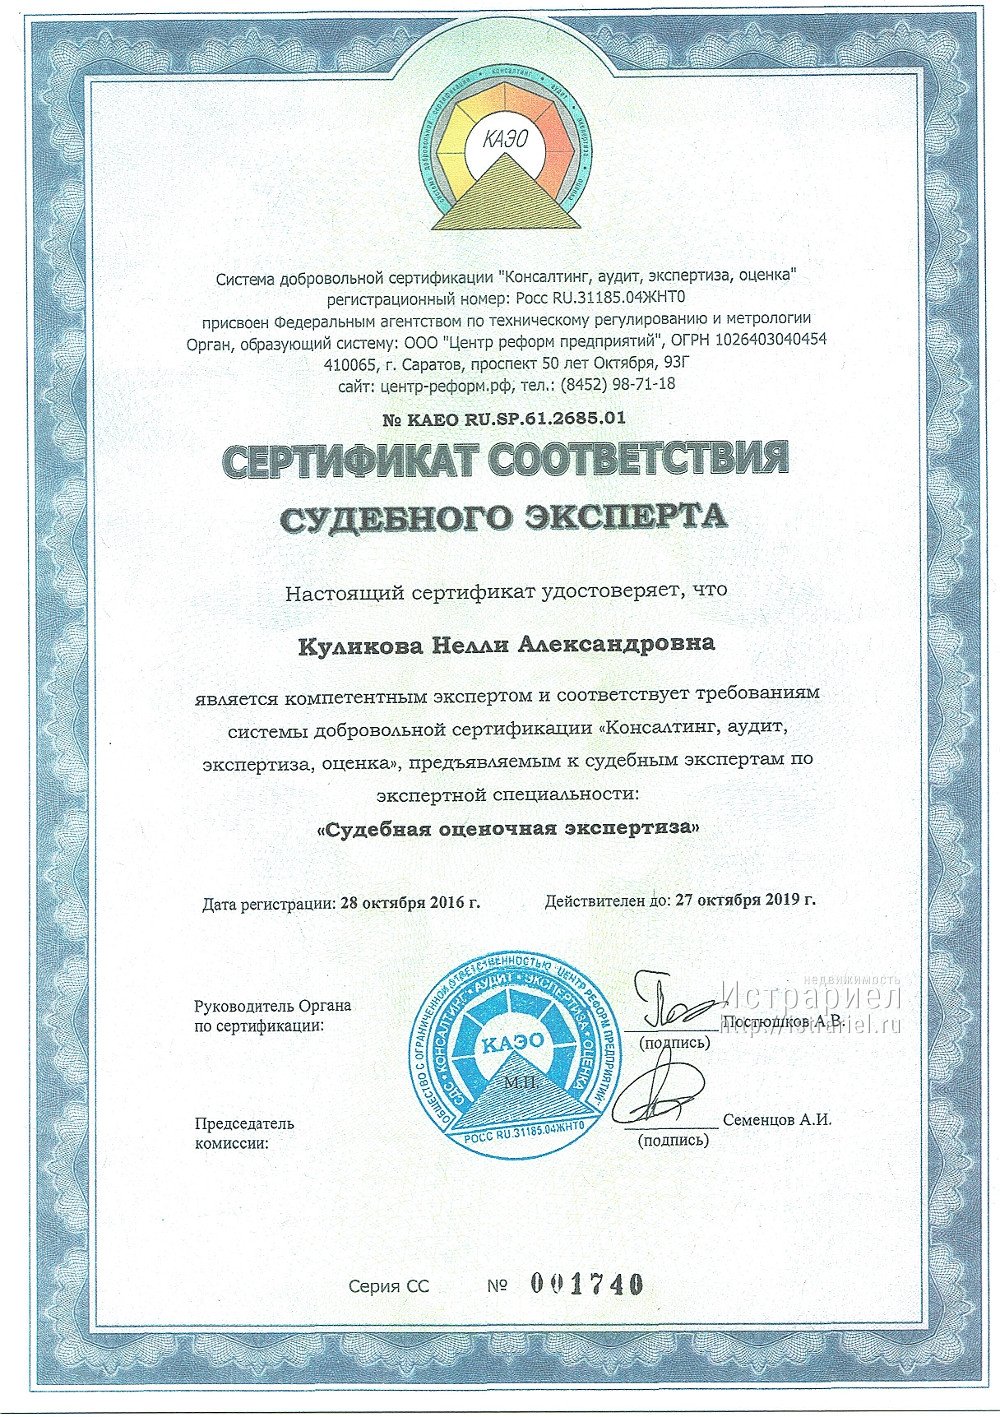 Сертификат судебного эксперта по специальности оценочная экспертиза